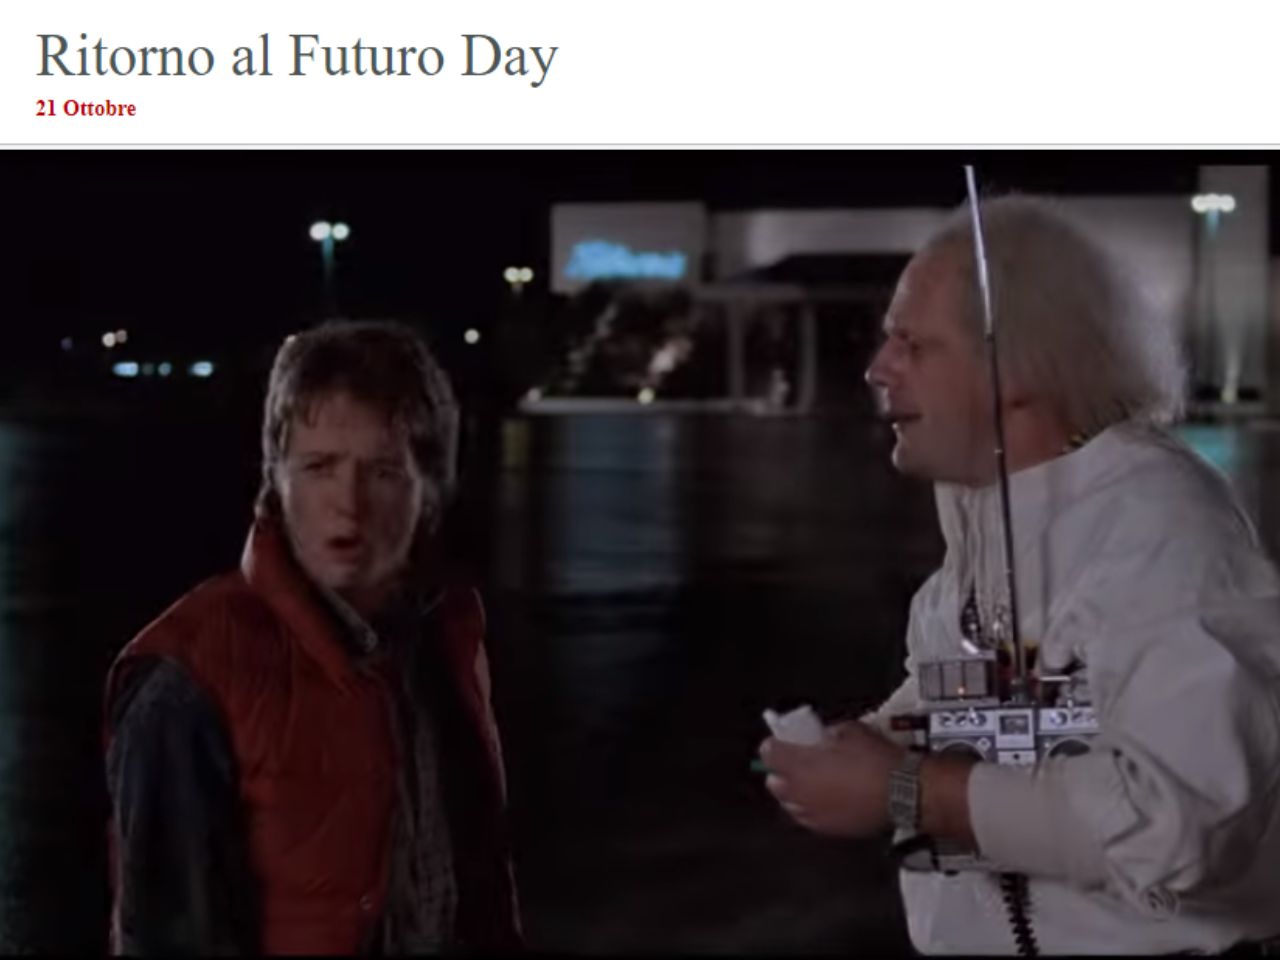 Ritorno al Futuro, 21 ottobre la giornata dedicata al film cult degli anni ’80